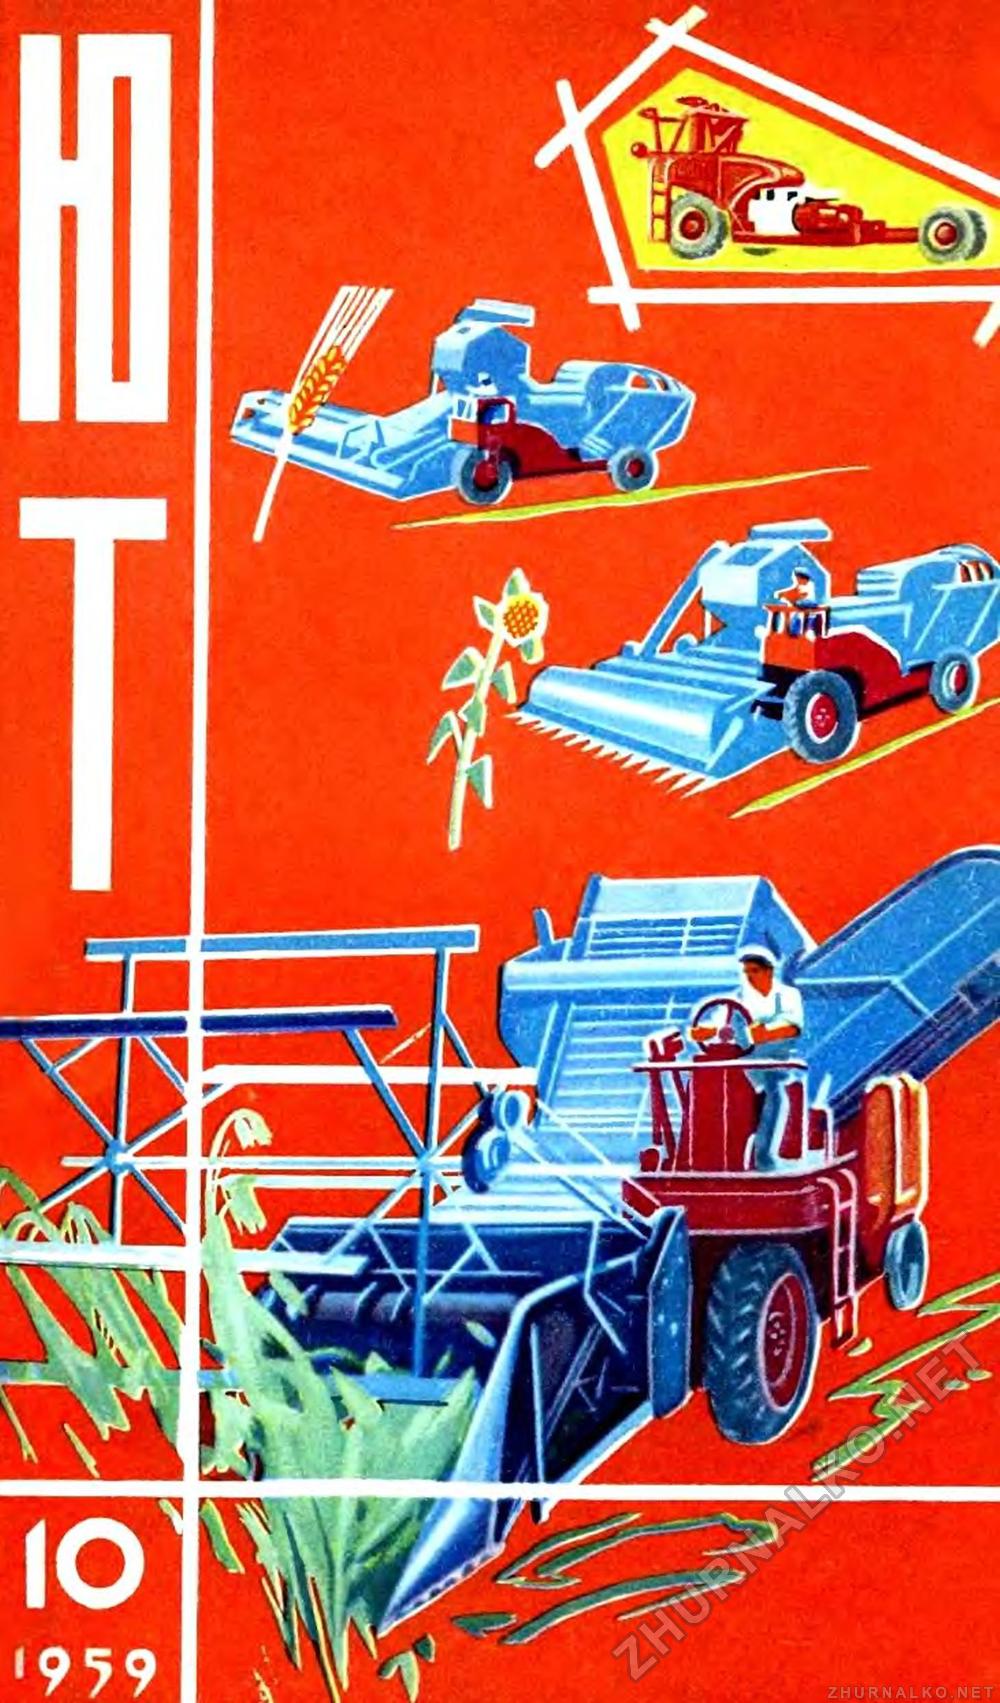   1959-10,  1